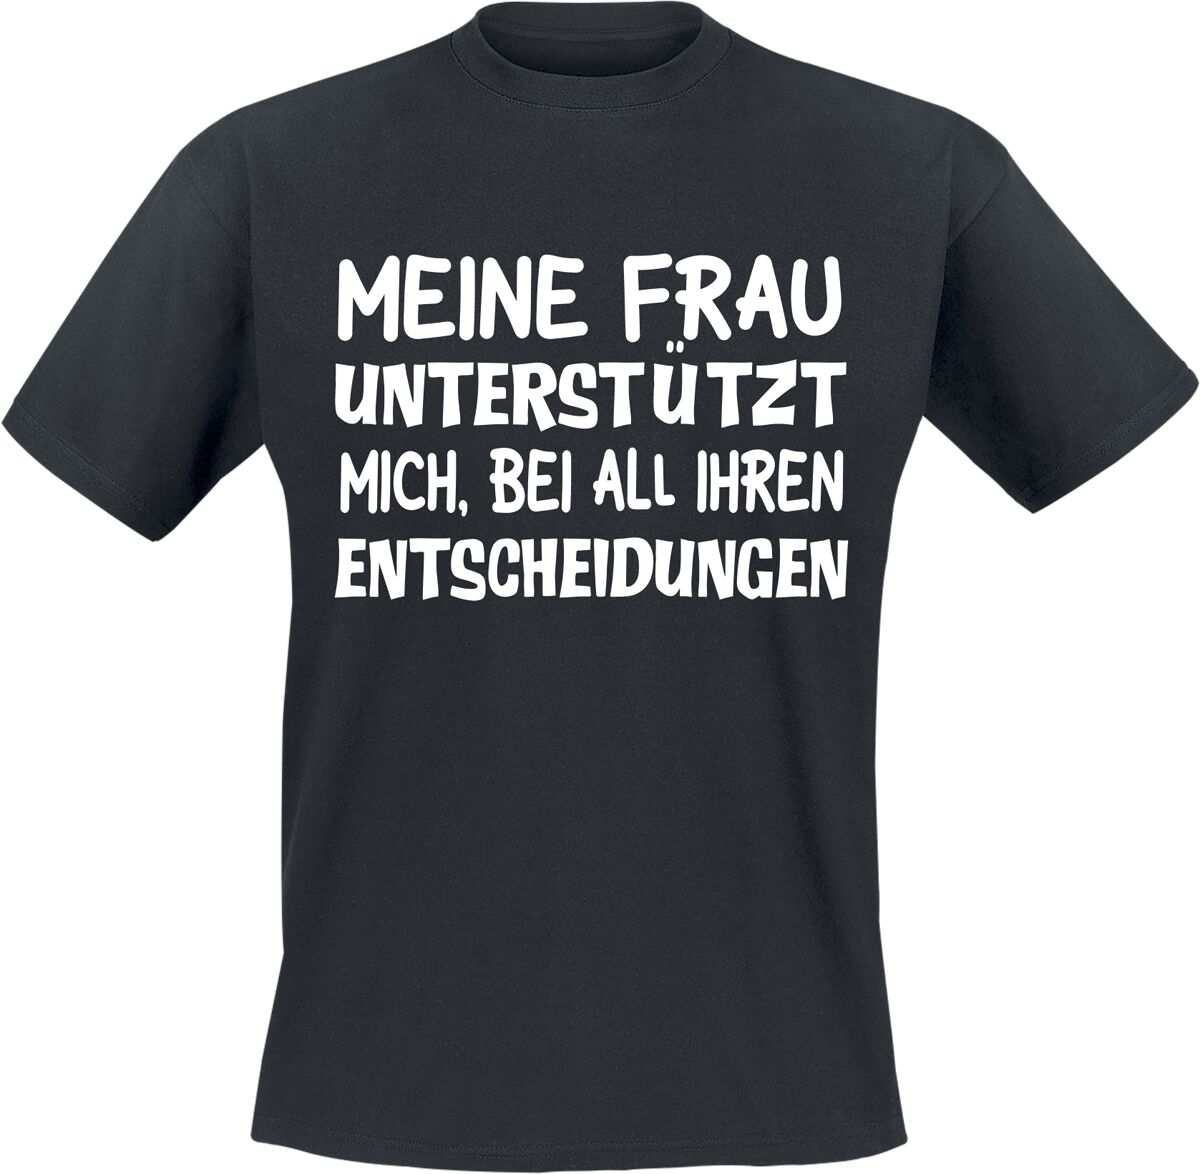 Sprüche T-Shirt - Meine Frau unterstützt mich, bei all ihren Entscheidungen - M bis 3XL - für Männer - Größe 3XL - schwarz